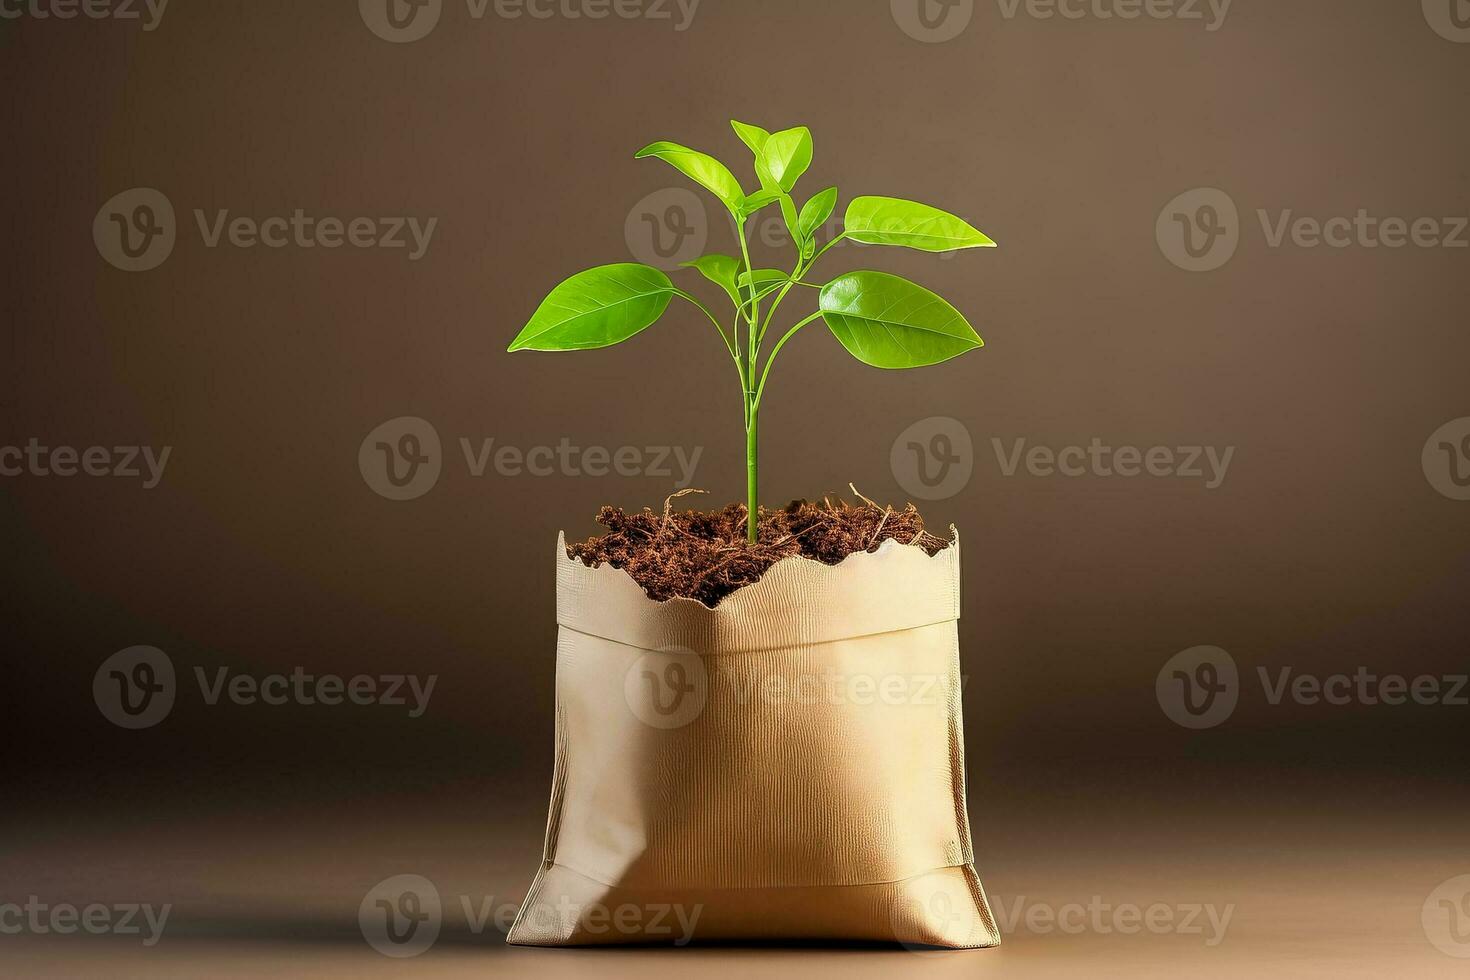 pequeno verde plantar dentro Castanho papel saco contra Castanho fundo sustentabilidade conceito minimalista estilo ilustração 3d render foto